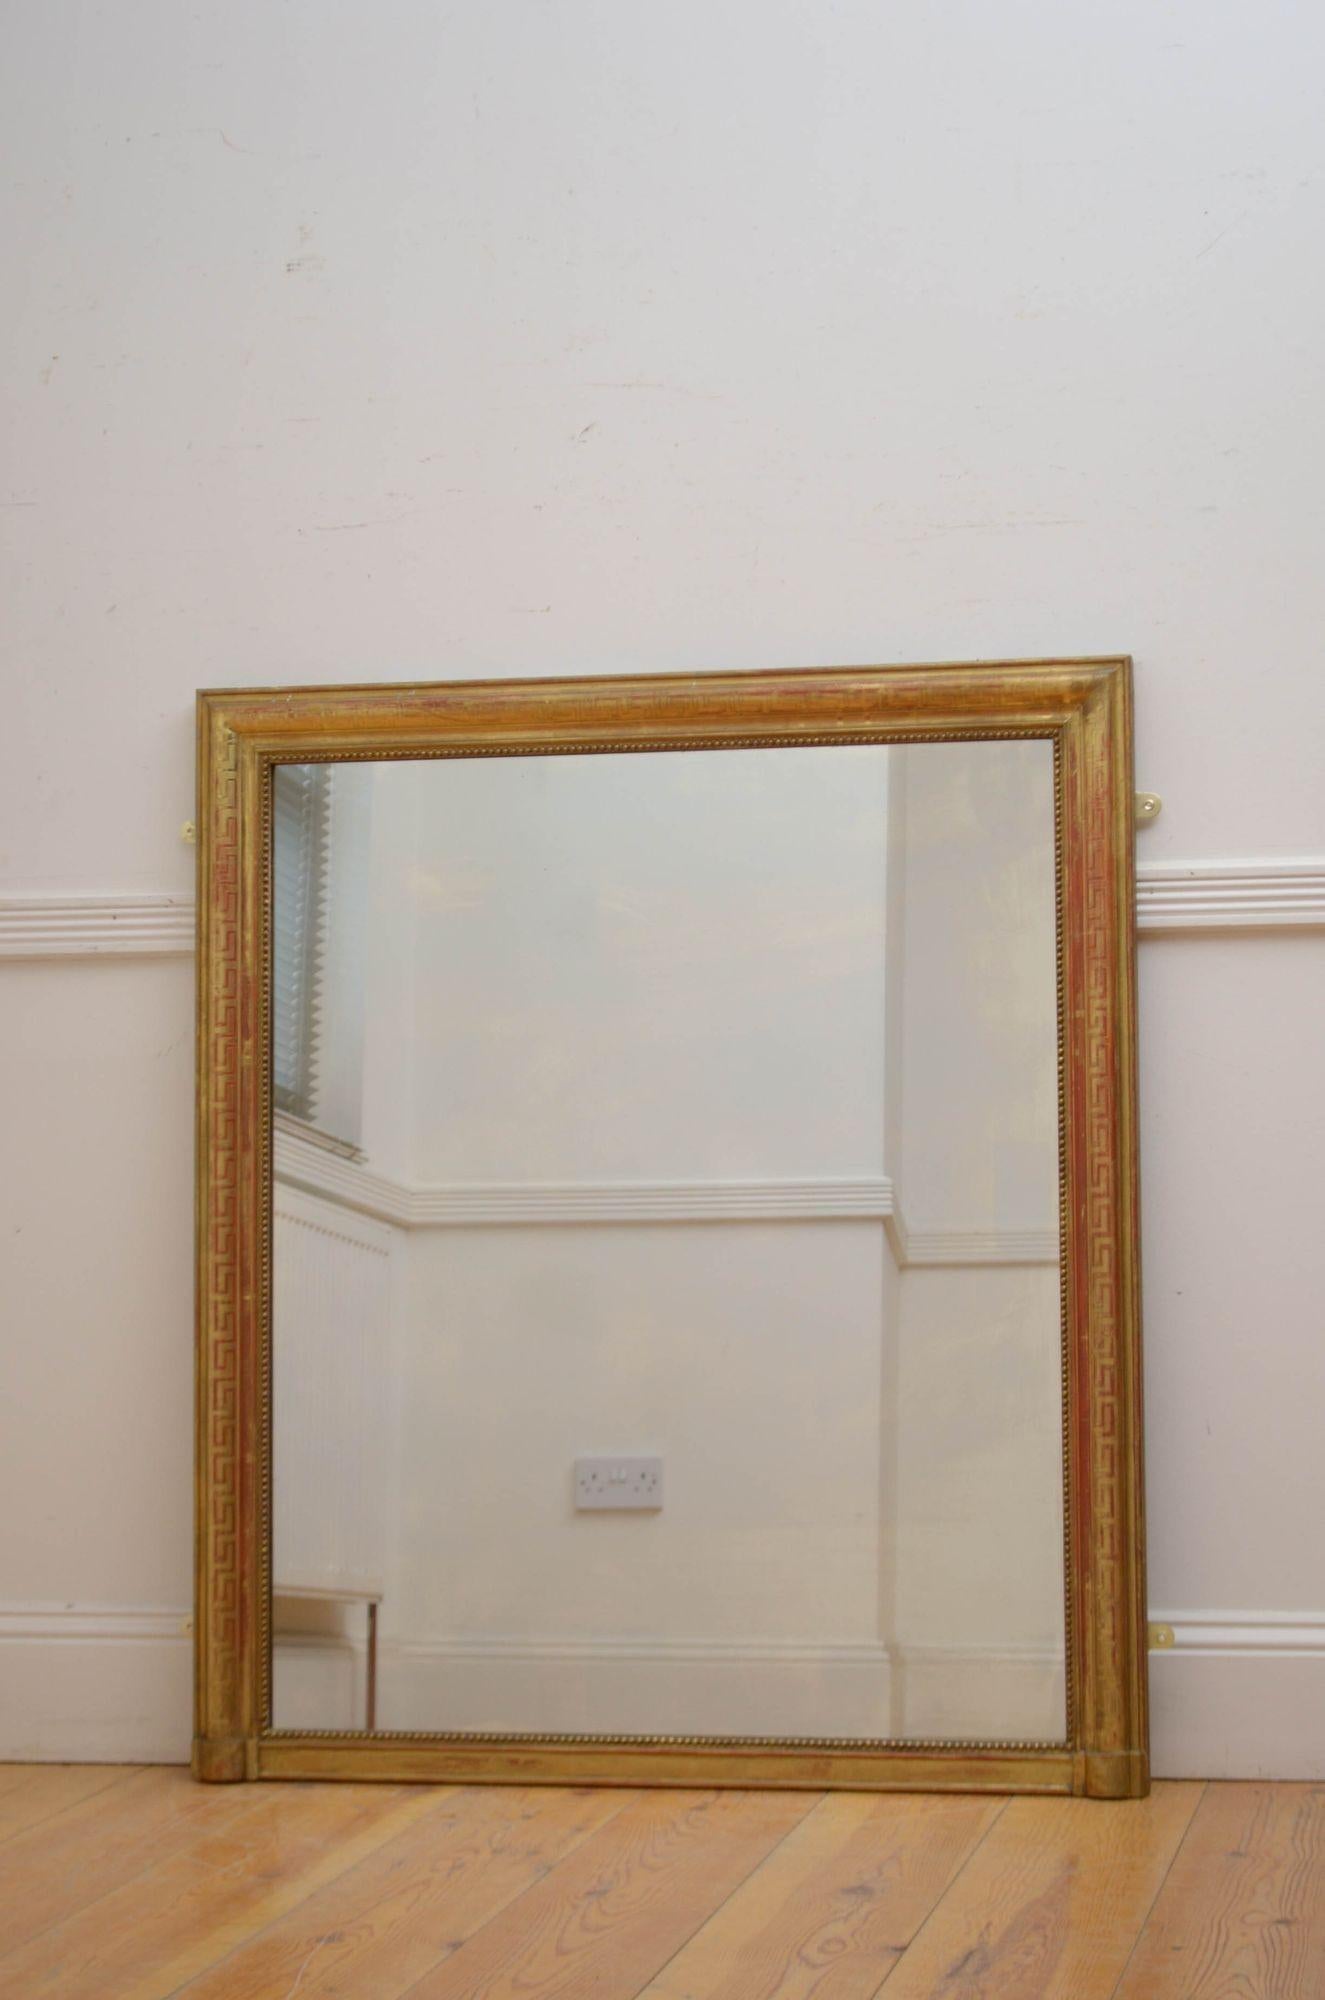 Sn5538 Elegantes 19. Jahrhundert Französisch, vergoldet Wandspiegel, mit Original-Glas mit einigen Unvollkommenheiten in Perlen, geformt und vergoldeten Rahmen mit griechischen Schlüssel Dekoration ganz. Dieser antike Spiegel hat noch das